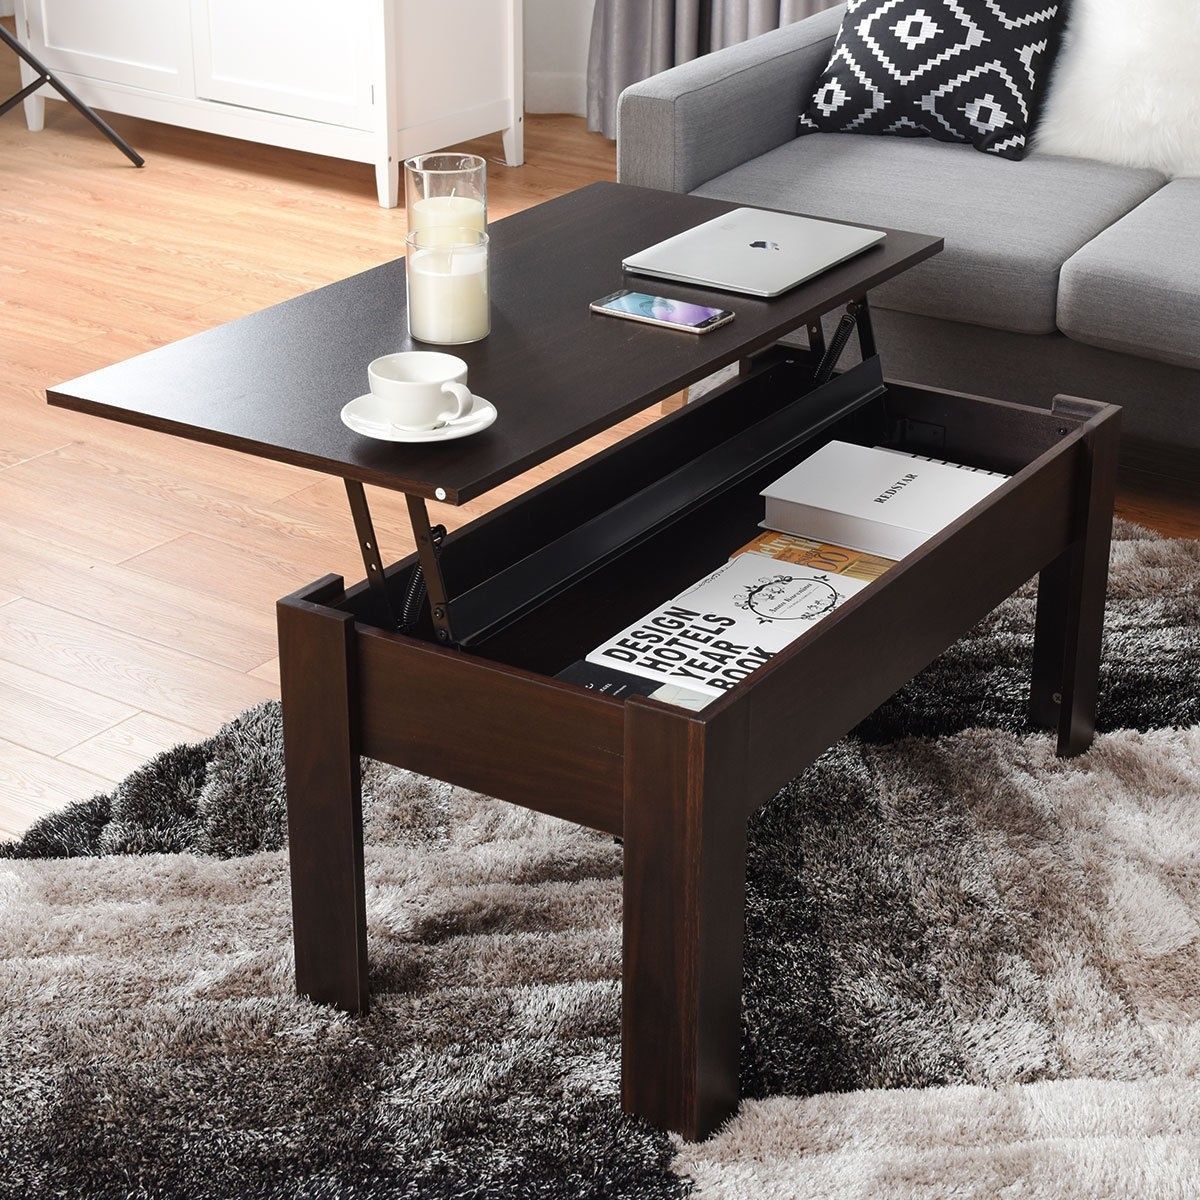 Modern Furniture Hidden Compartment Lift Tabletop Coffee Table | Coffee Regarding Lift Top Coffee Tables With Hidden Storage Compartments (Gallery 19 of 20)